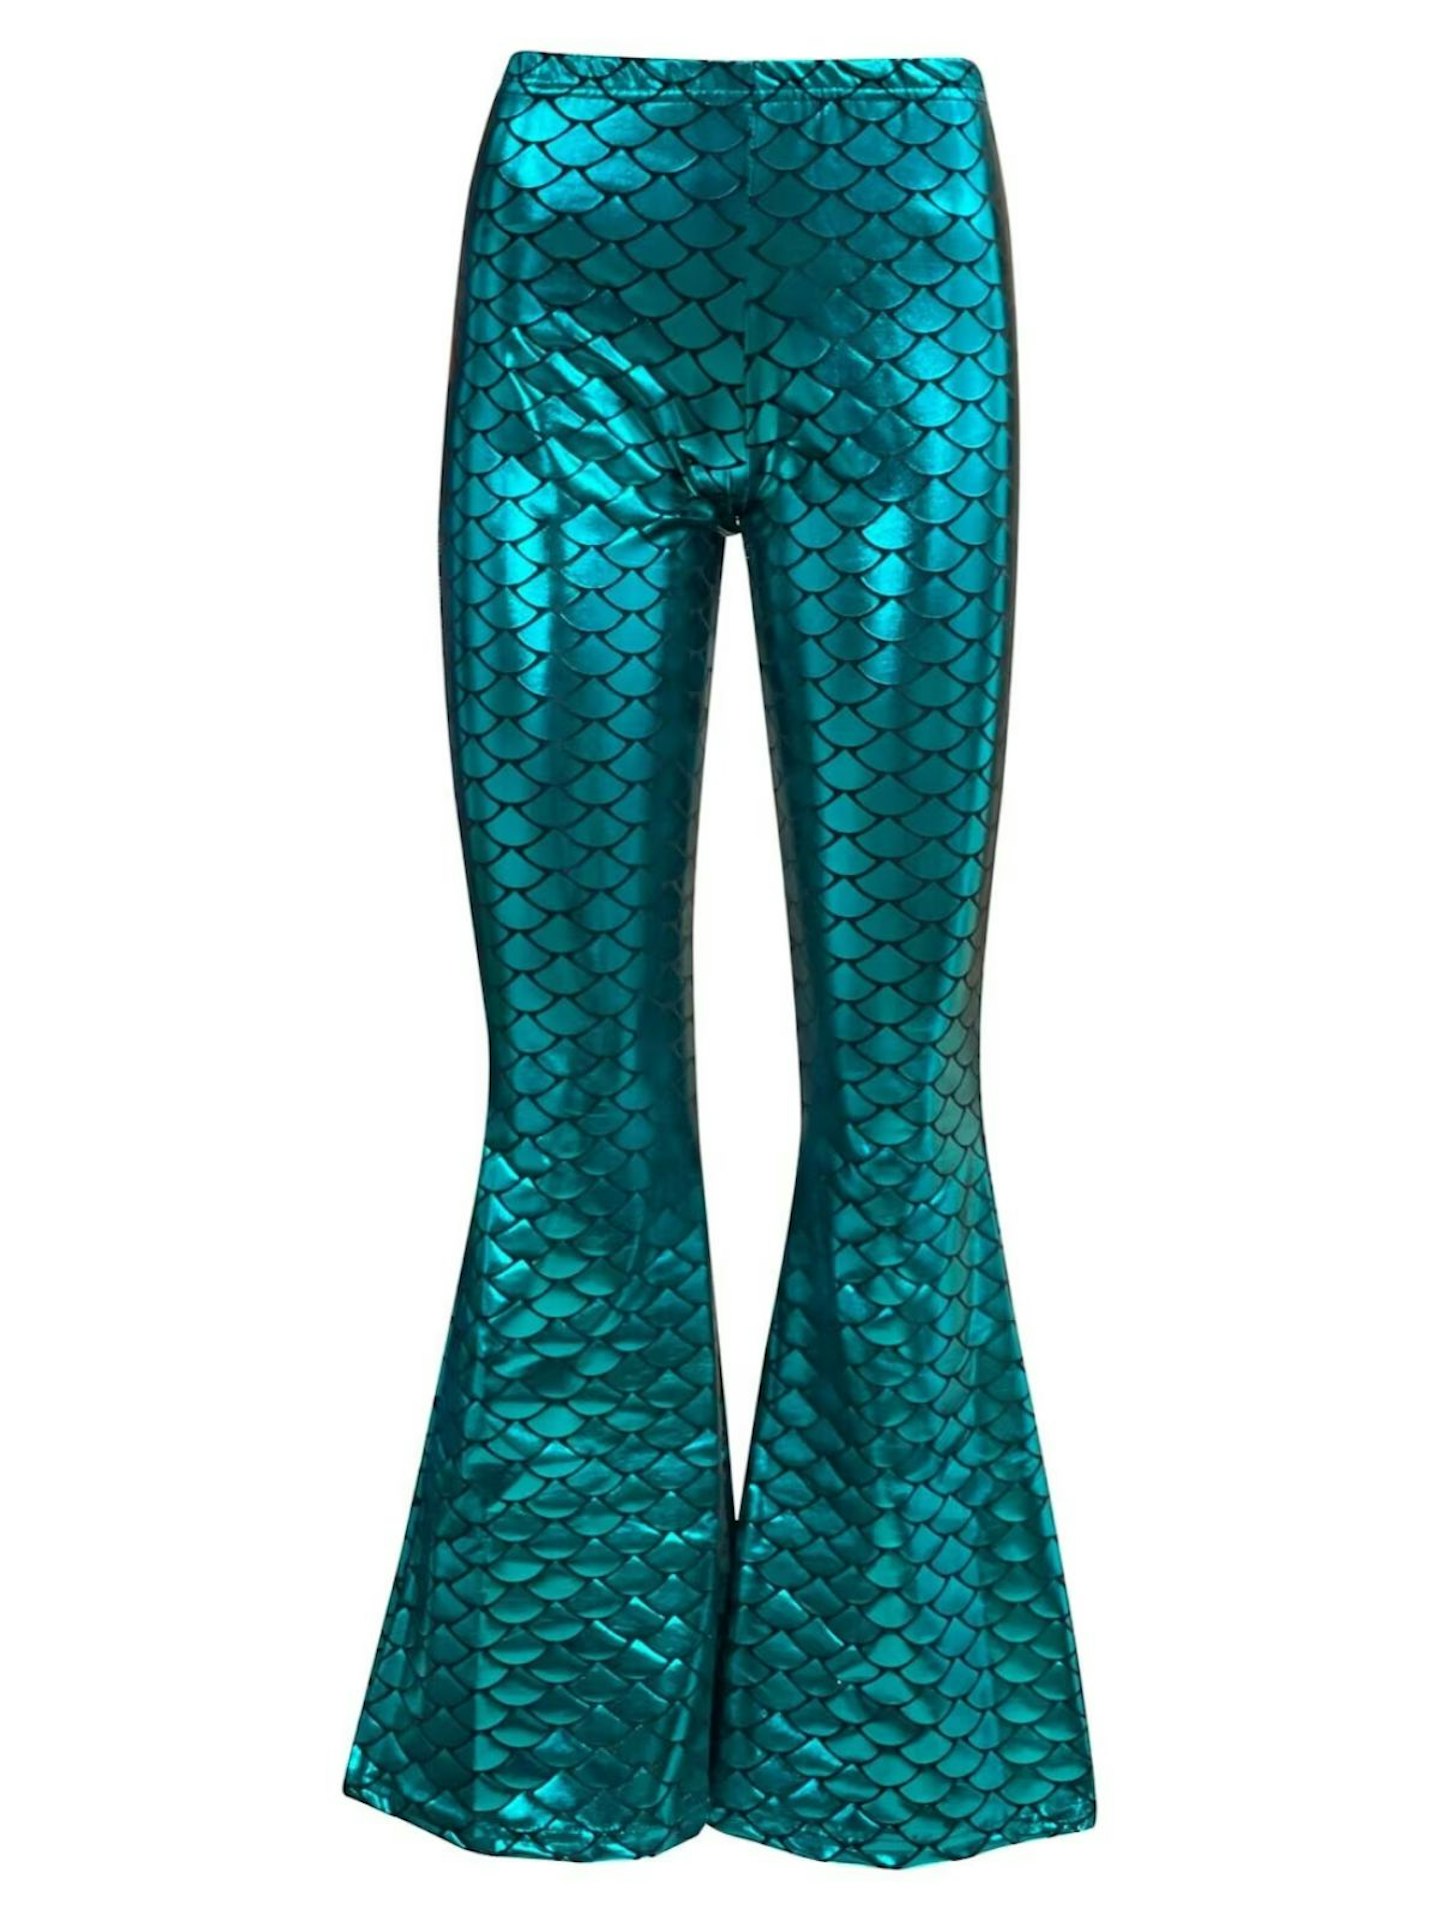 High-ly Recommended Leggings Full Length - Mermaid Green – KFT Brands